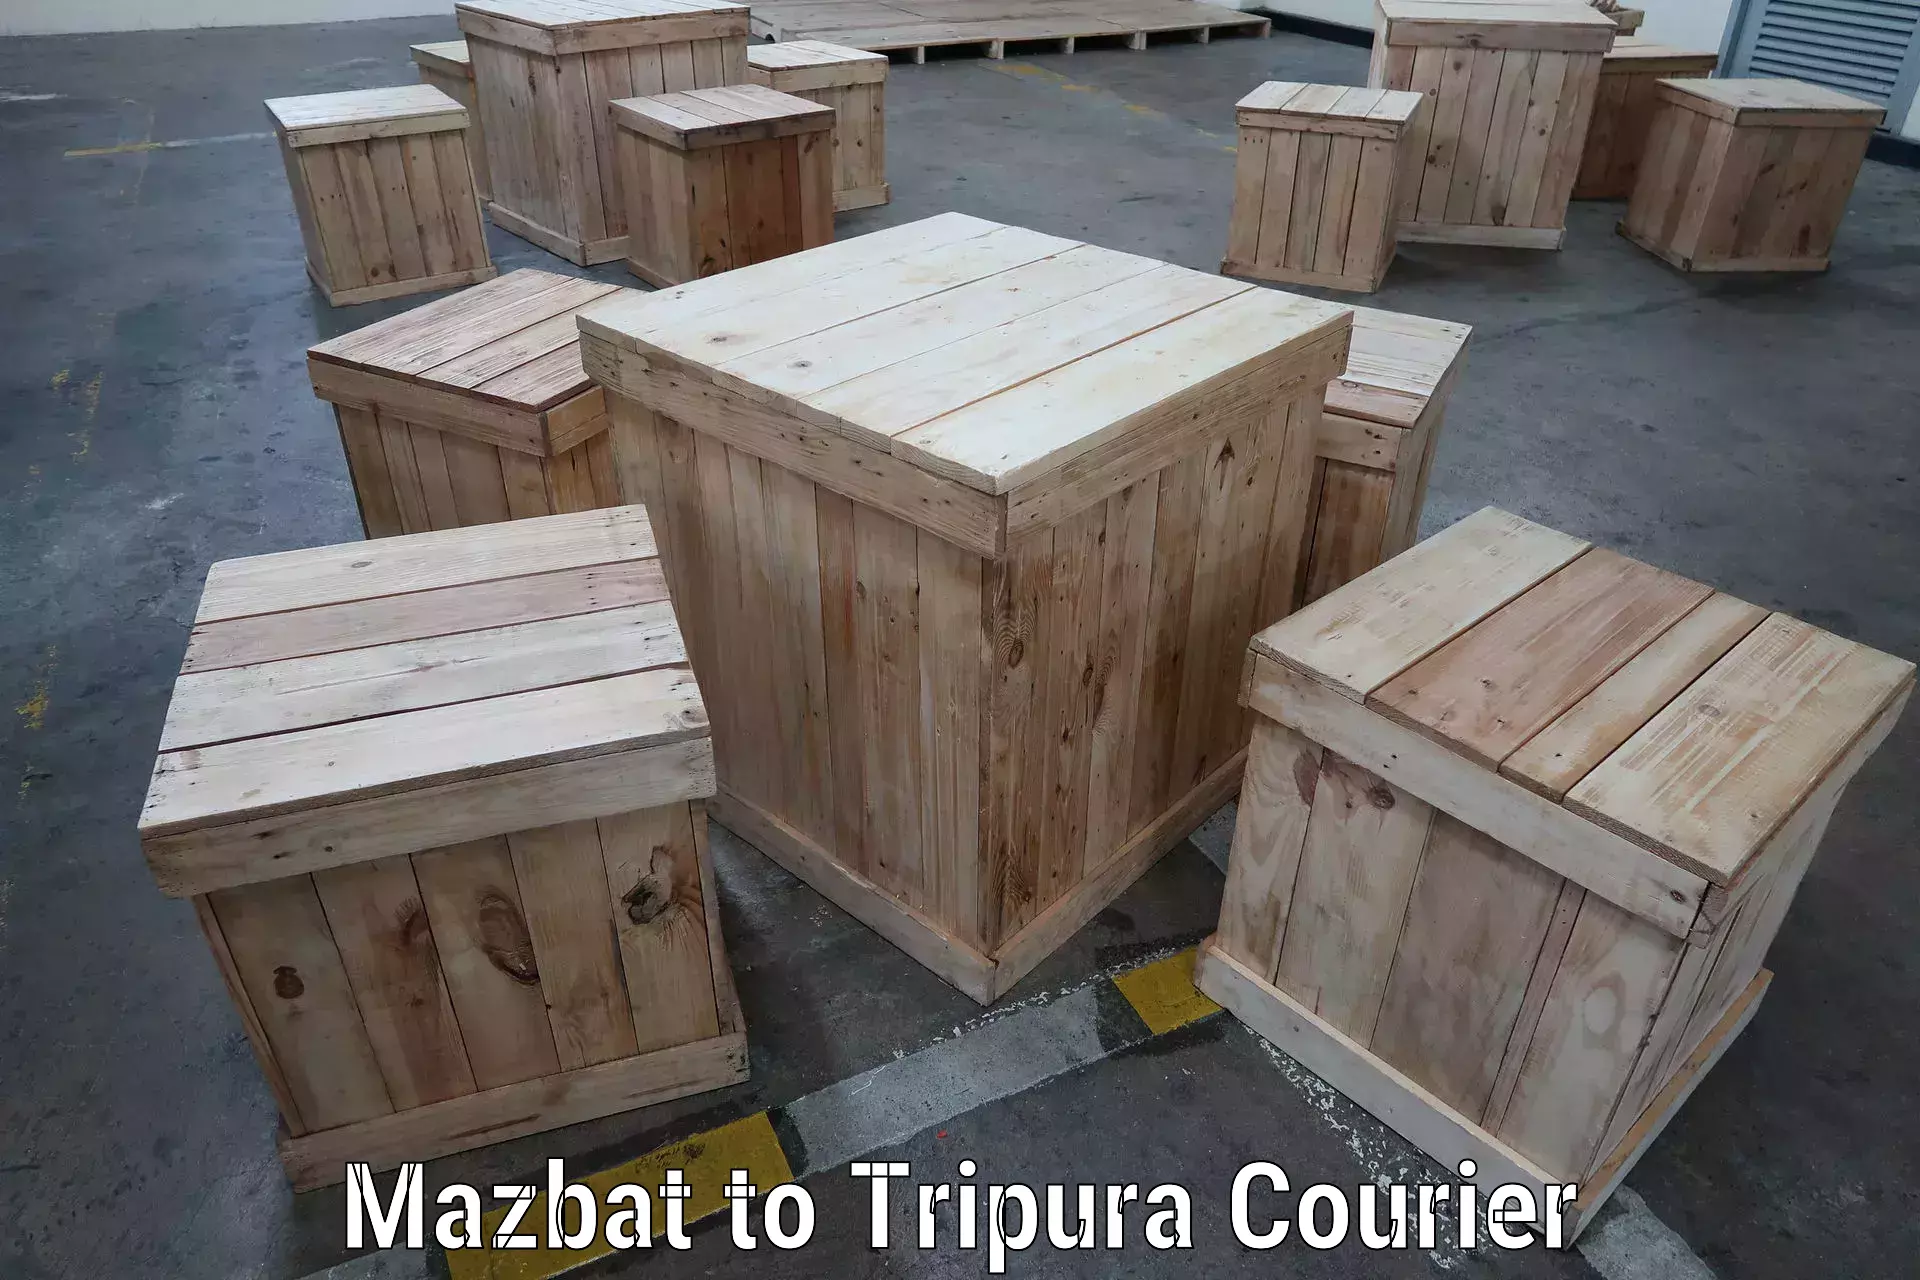 On-demand courier Mazbat to Udaipur Tripura